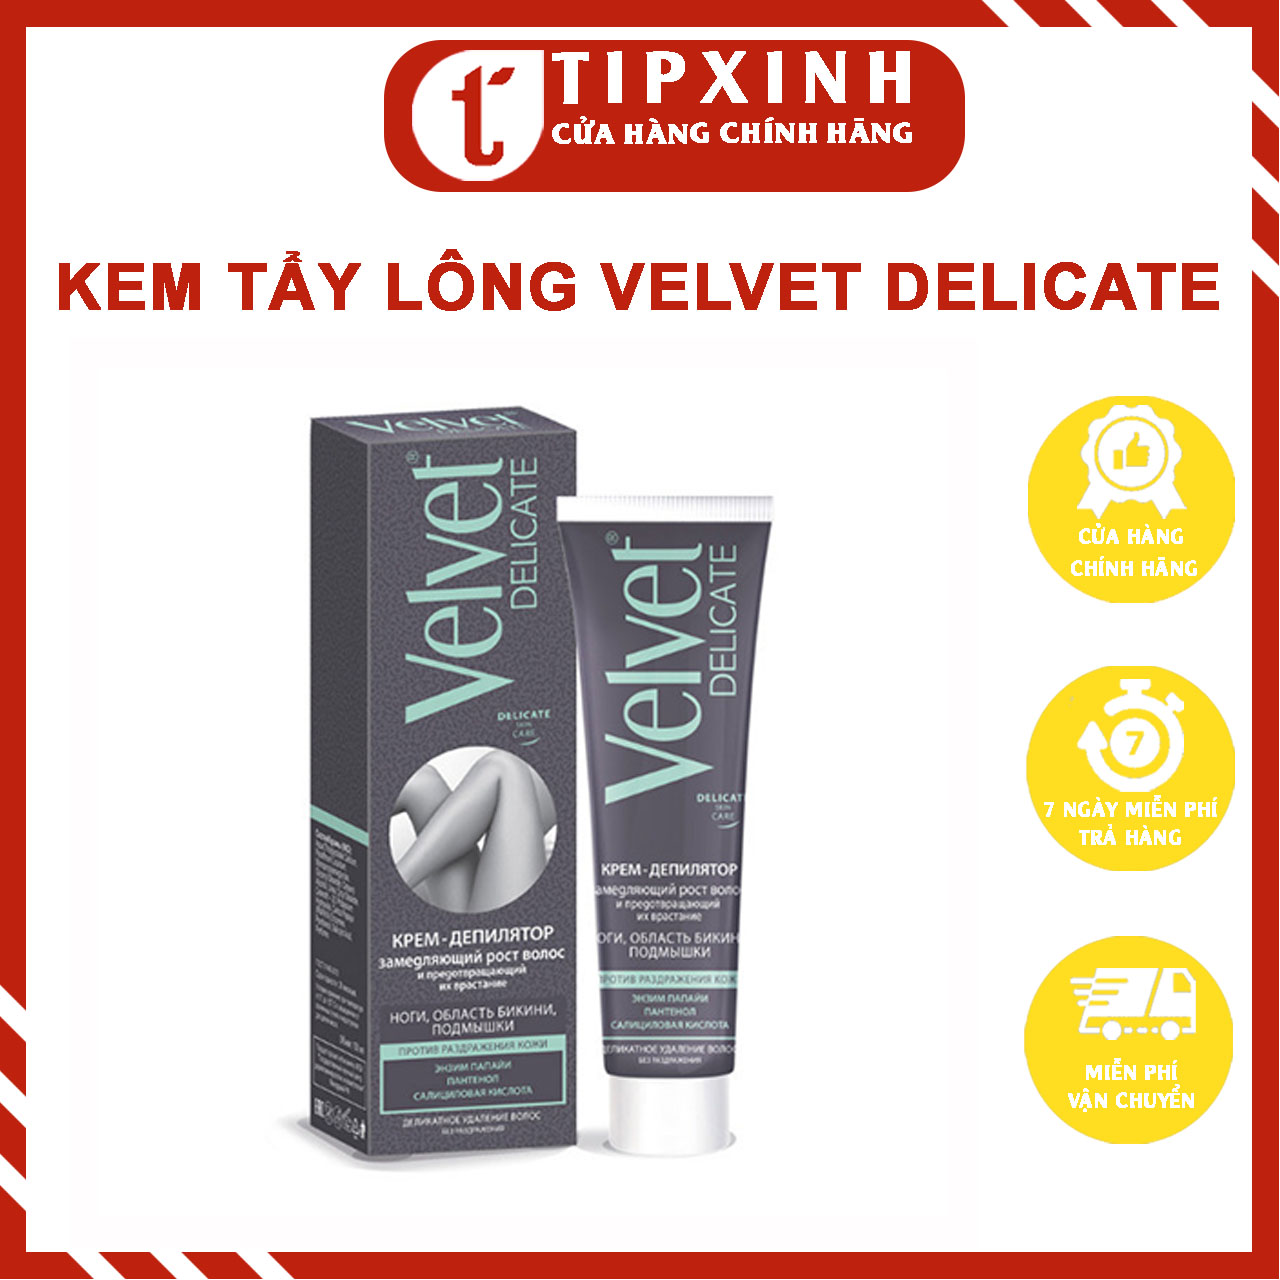 Kem tẩy lông Velvet Delicate làm chậm quá trình mọc lông và ngăn lông mọc ngược thumbnail